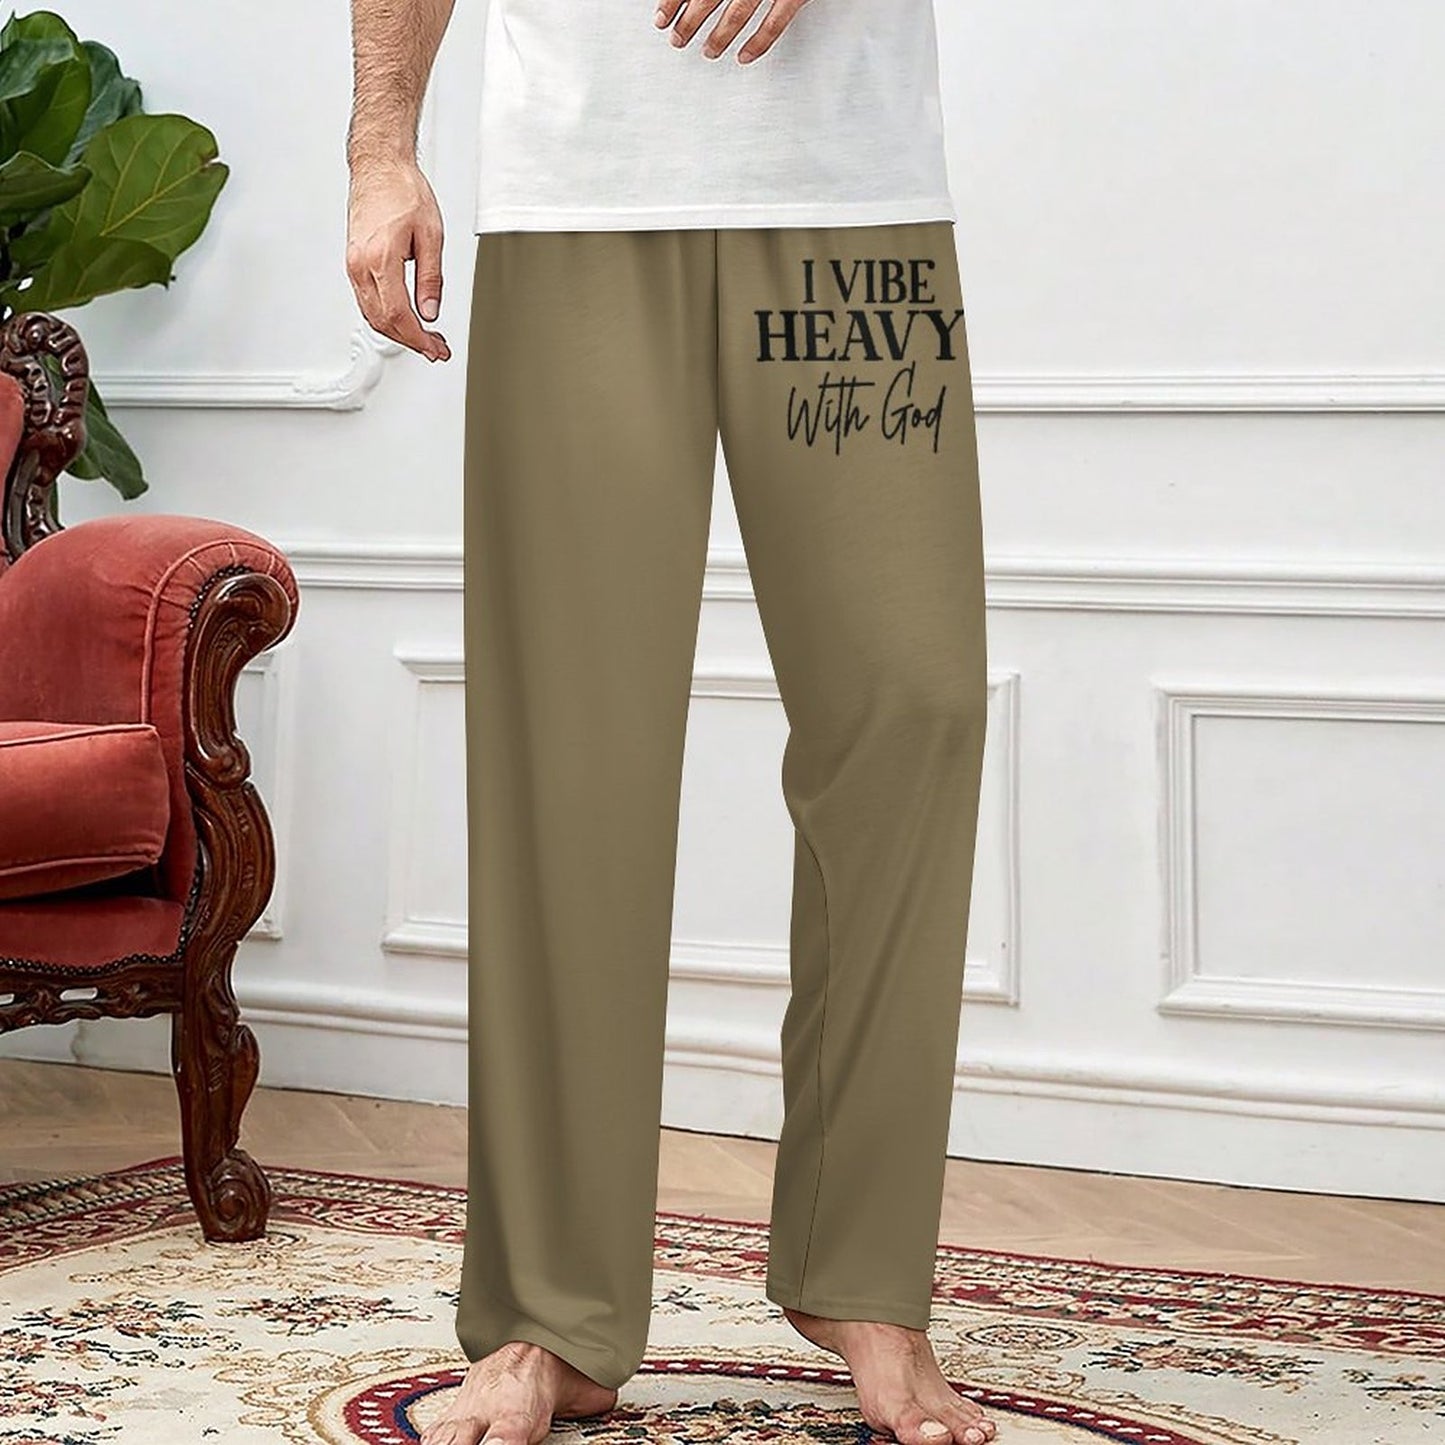 I Vibe Heavy With God Men's Christian Pajamas Pants